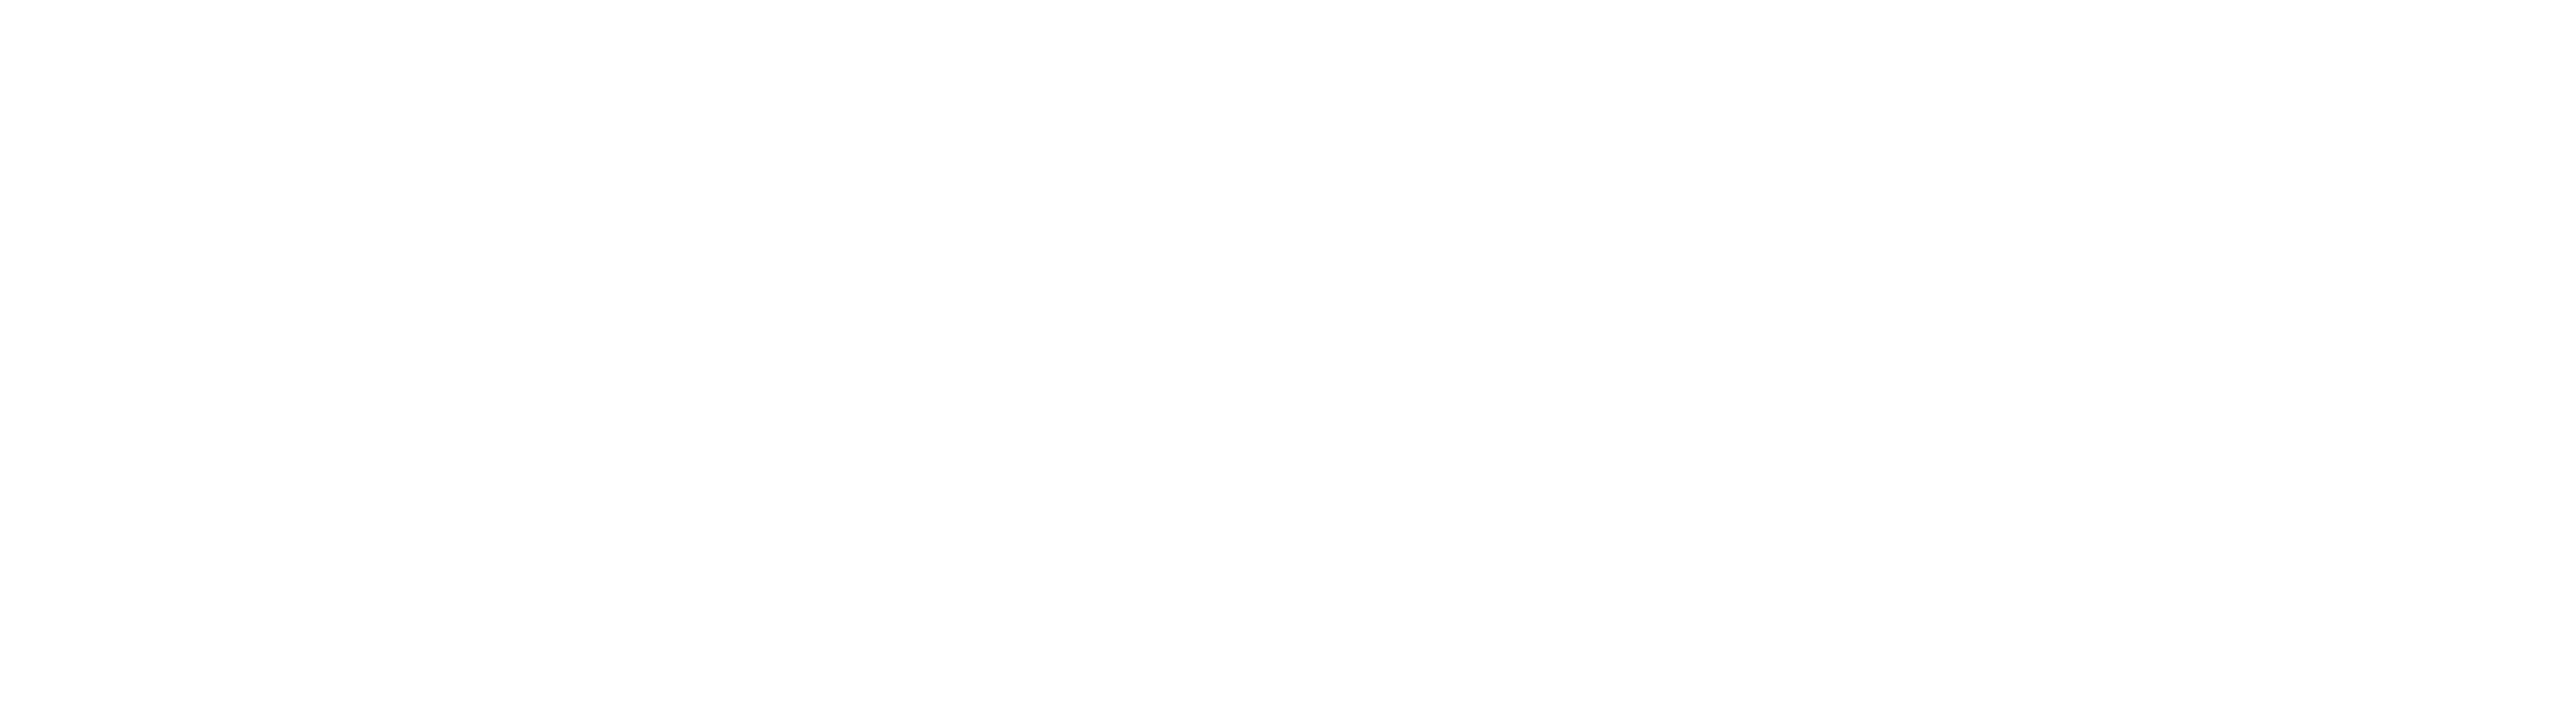 FCM Financial